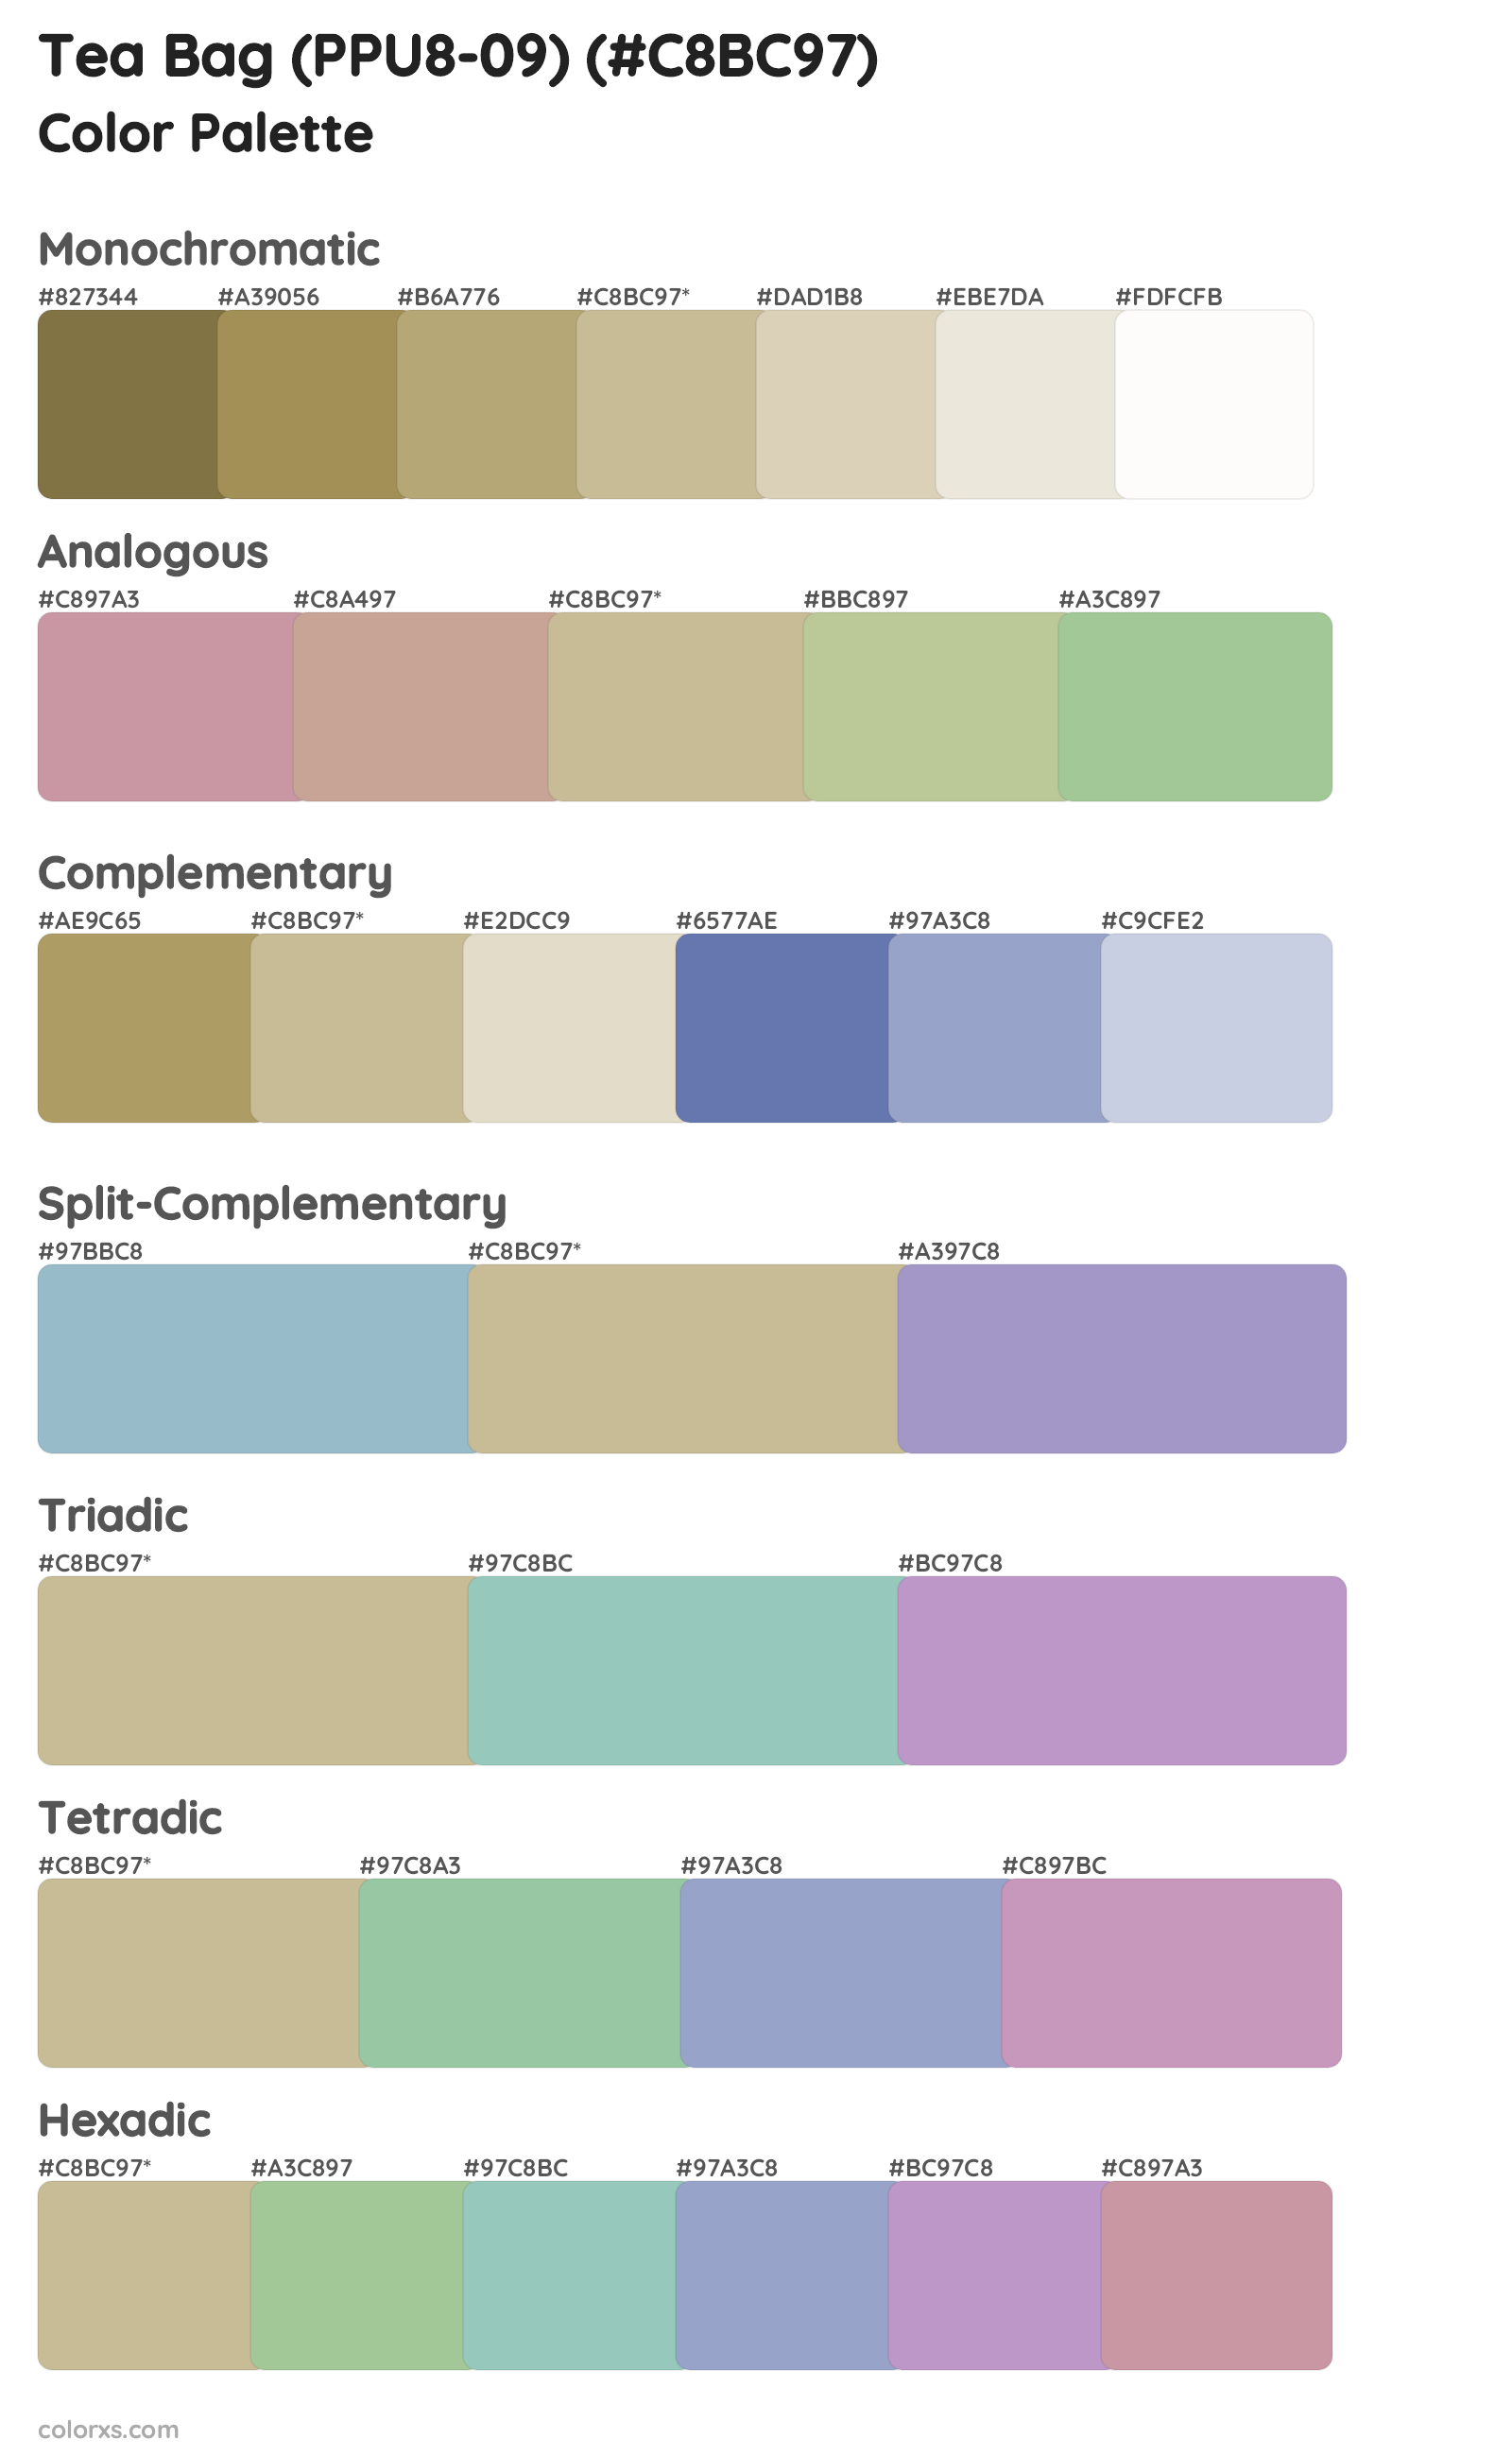 Tea Bag (PPU8-09) Color Scheme Palettes